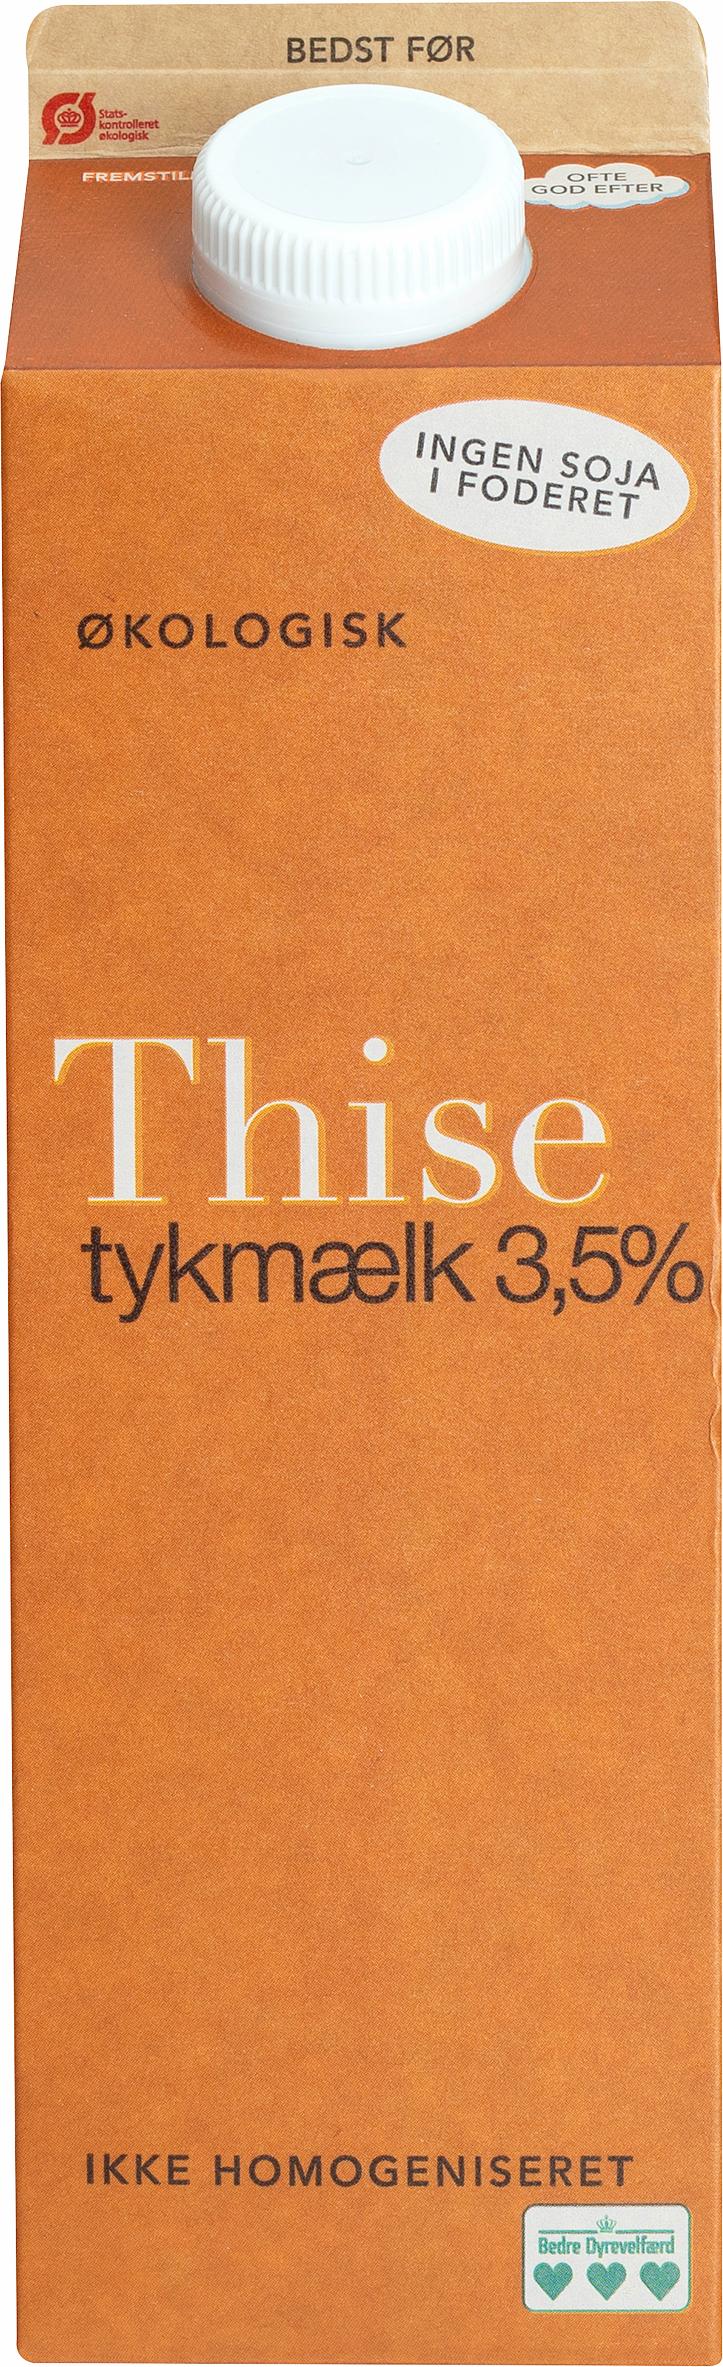 Thise Tykmælk 3,5% 1000g